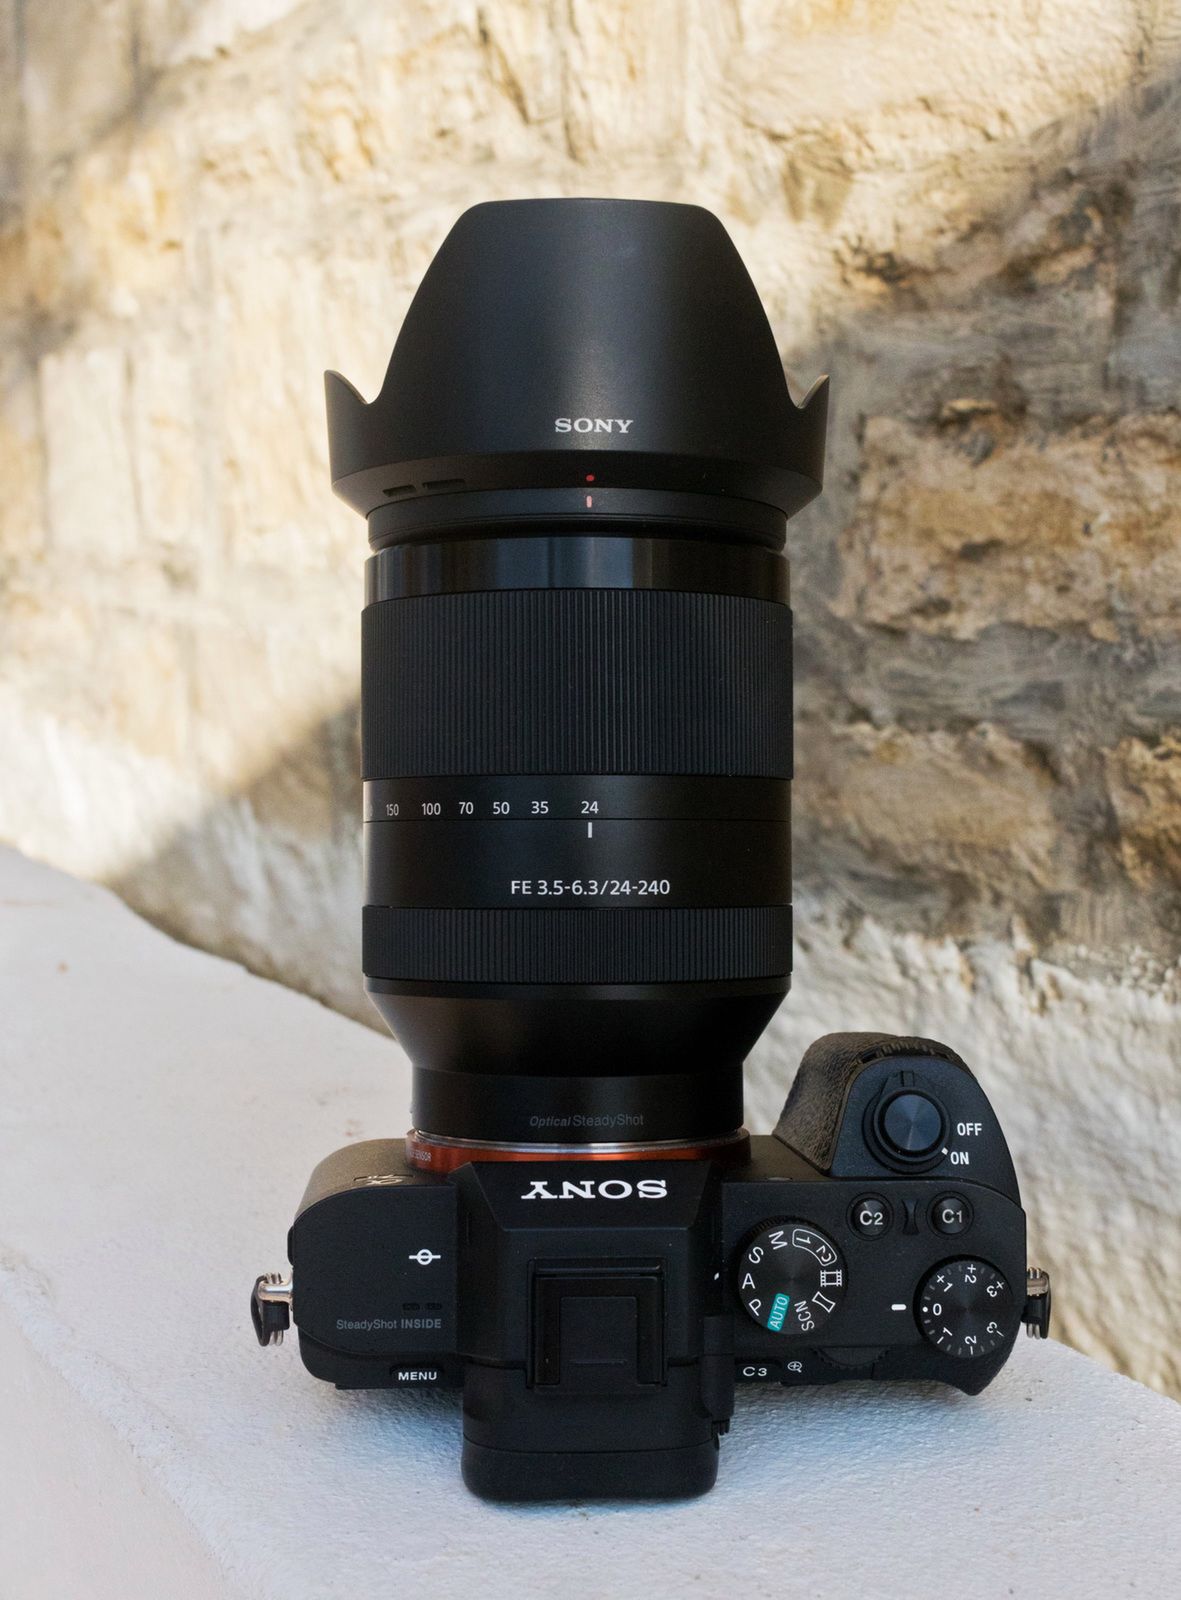 Katalogowa długość zooma to 119 mm, średnica 81 mm. Masa wynosi 780 g. Sony A7 II prezentuje się przy nim skromniutko.© Paweł Baldwin